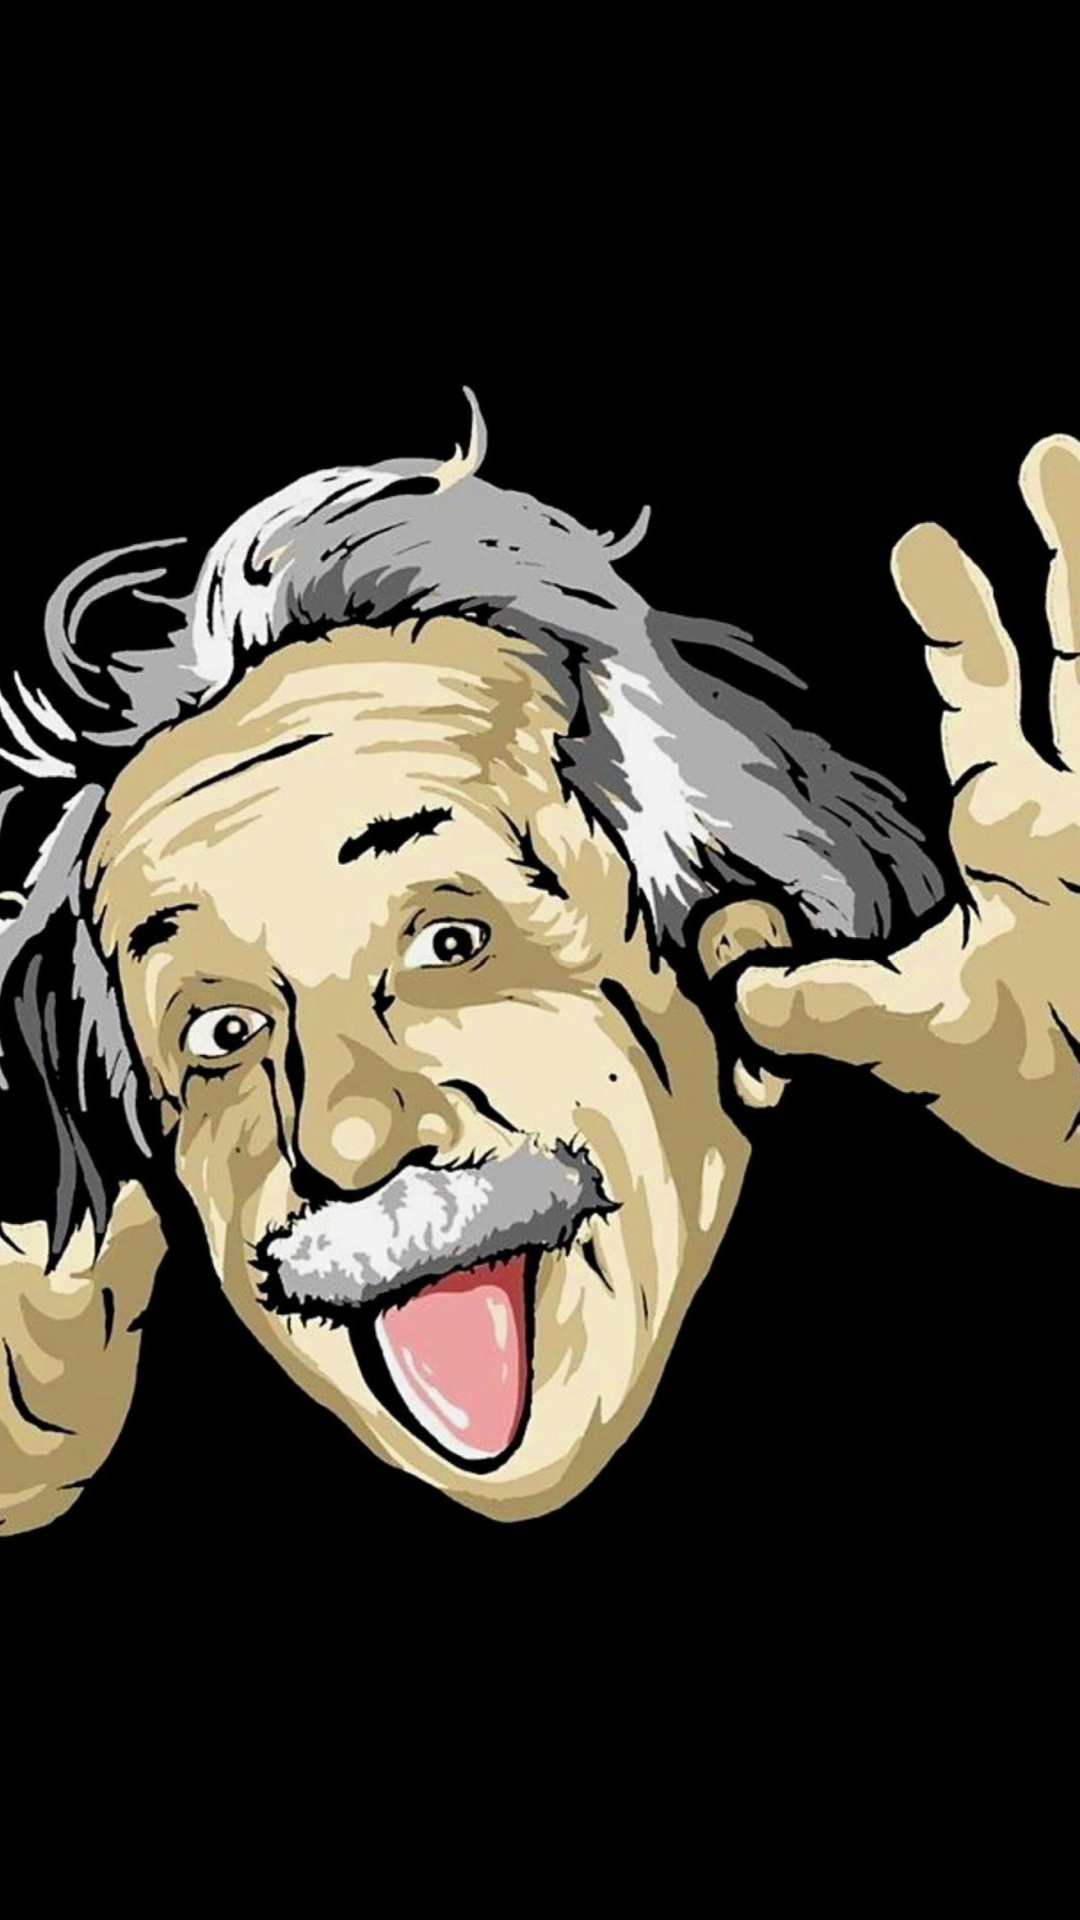 Funny Albert Einstein wallpaper 1080x1920